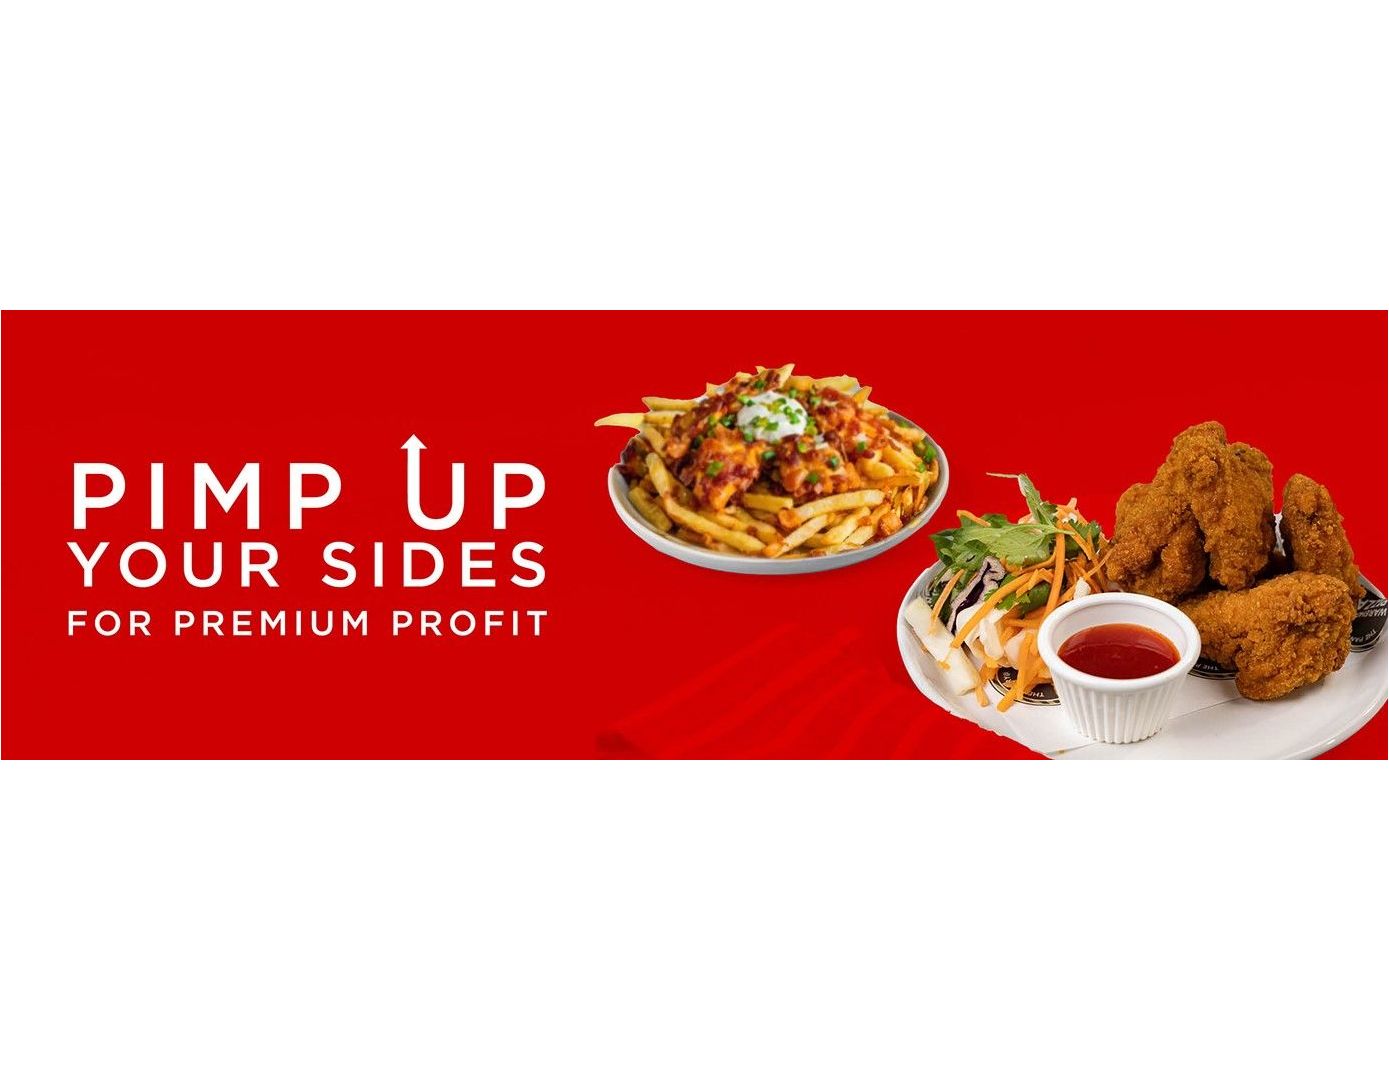 Pimp Up Your Sides for Premium Profits